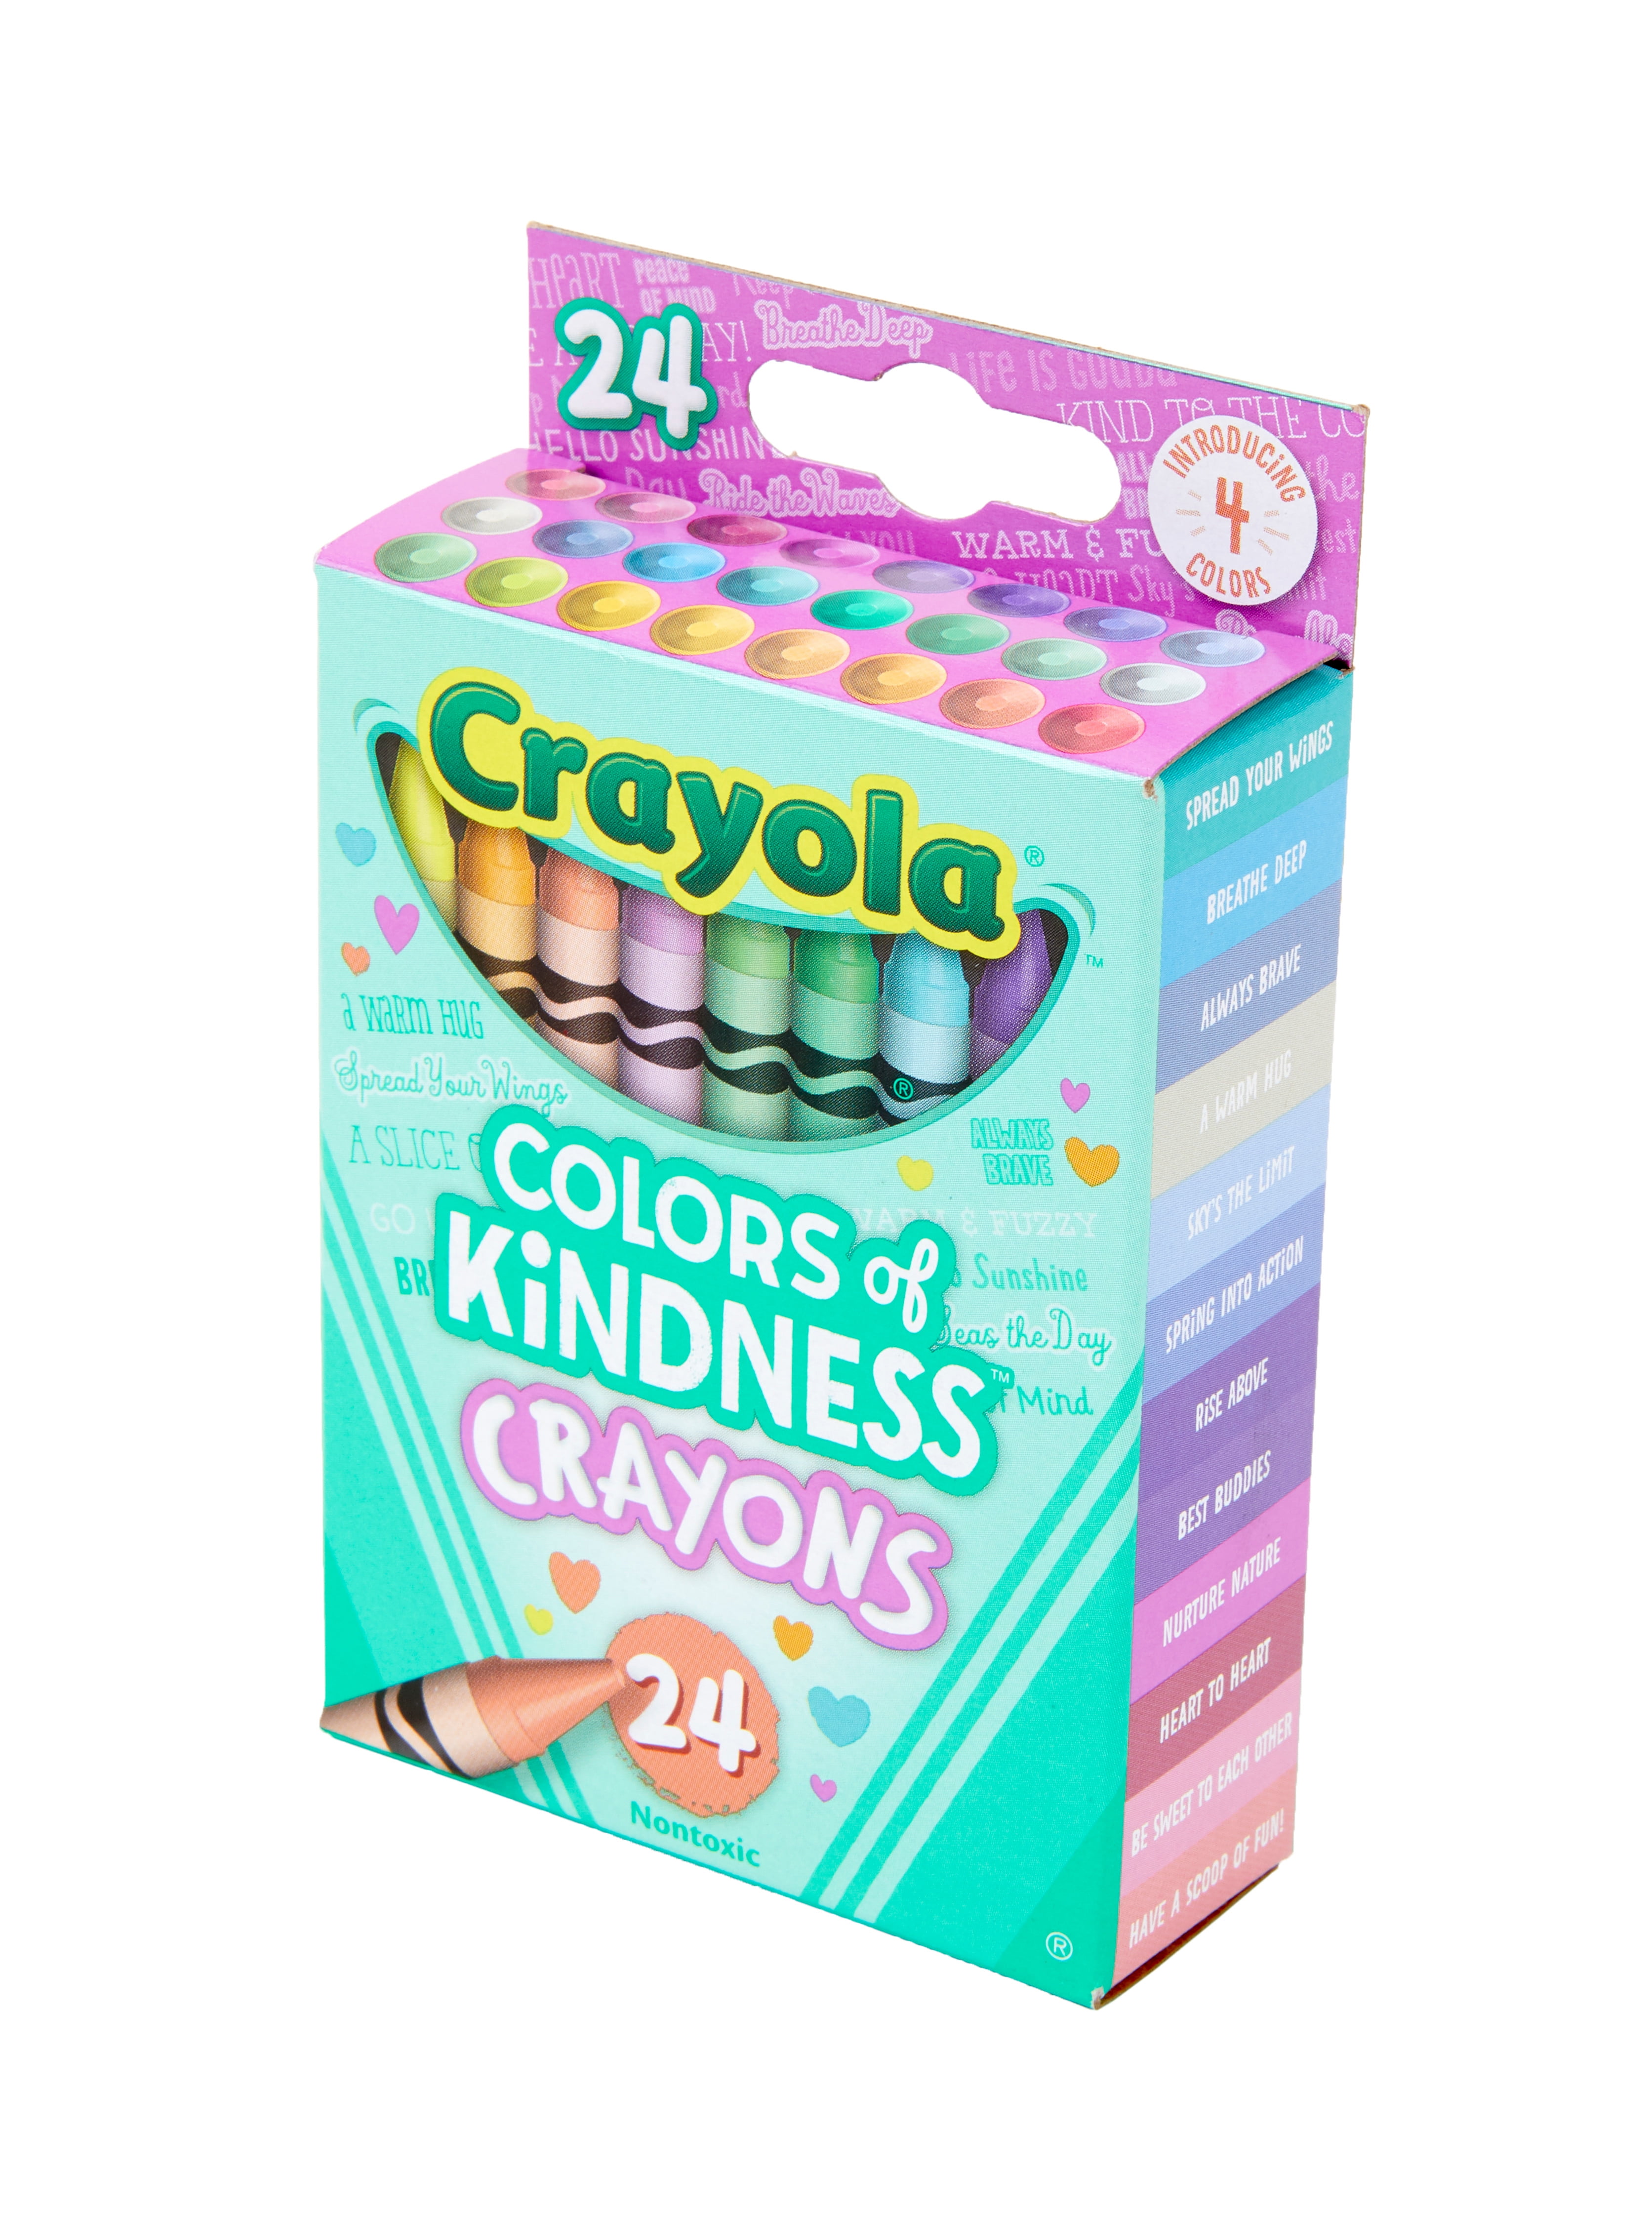 4 Color Crayon Sets by Windy City Novelties